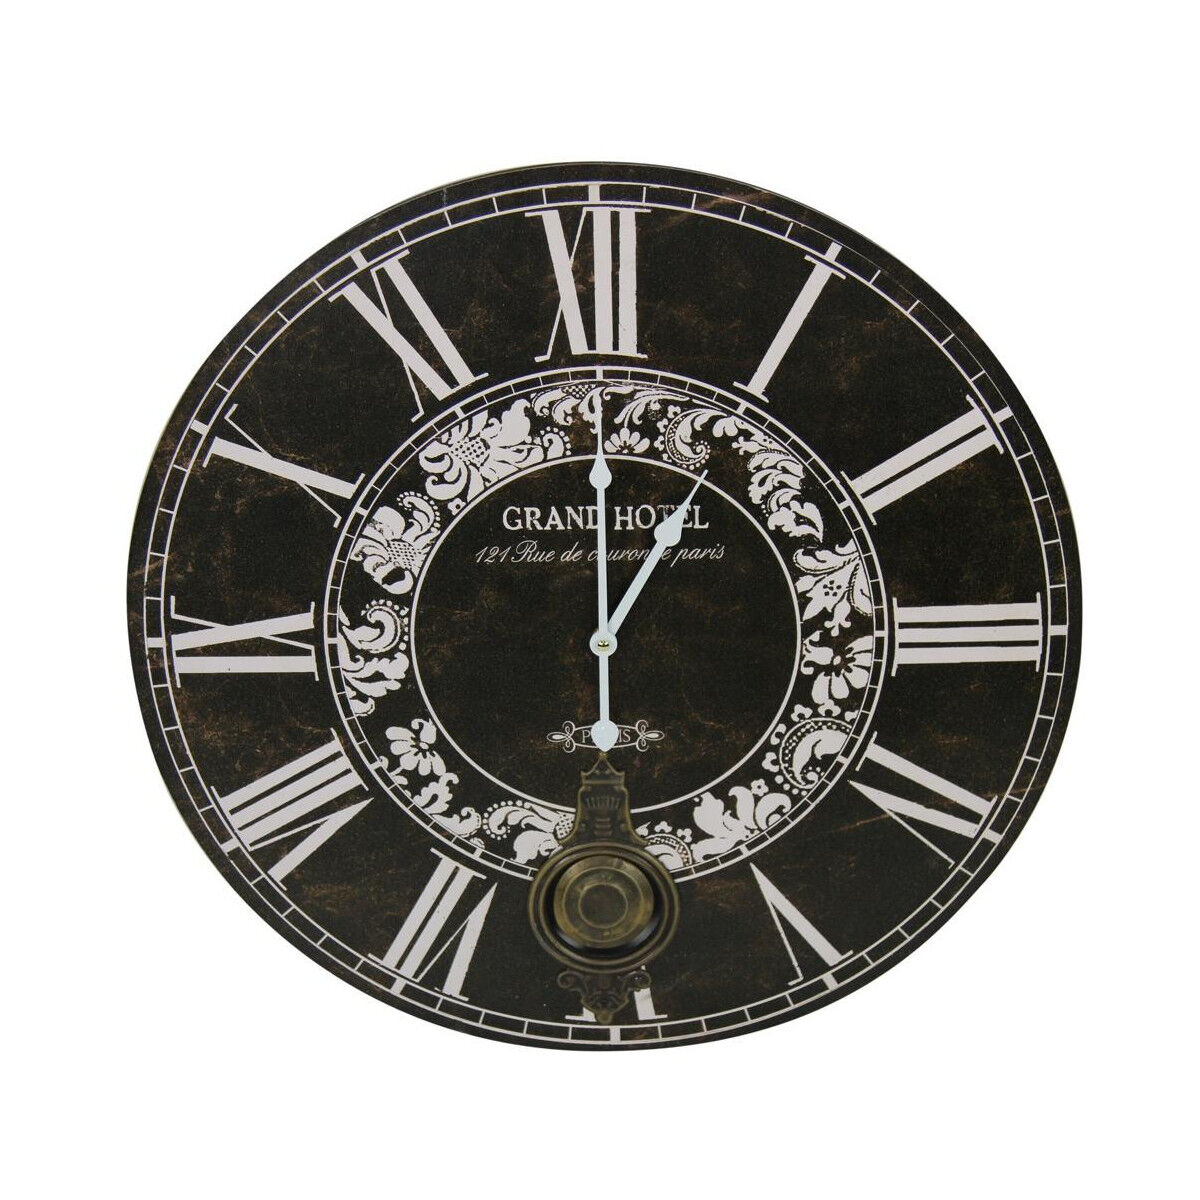 Décoration d'Autrefois Horloge Ancienne Balancier Grand Hôtel 58cm - Bois - Noir